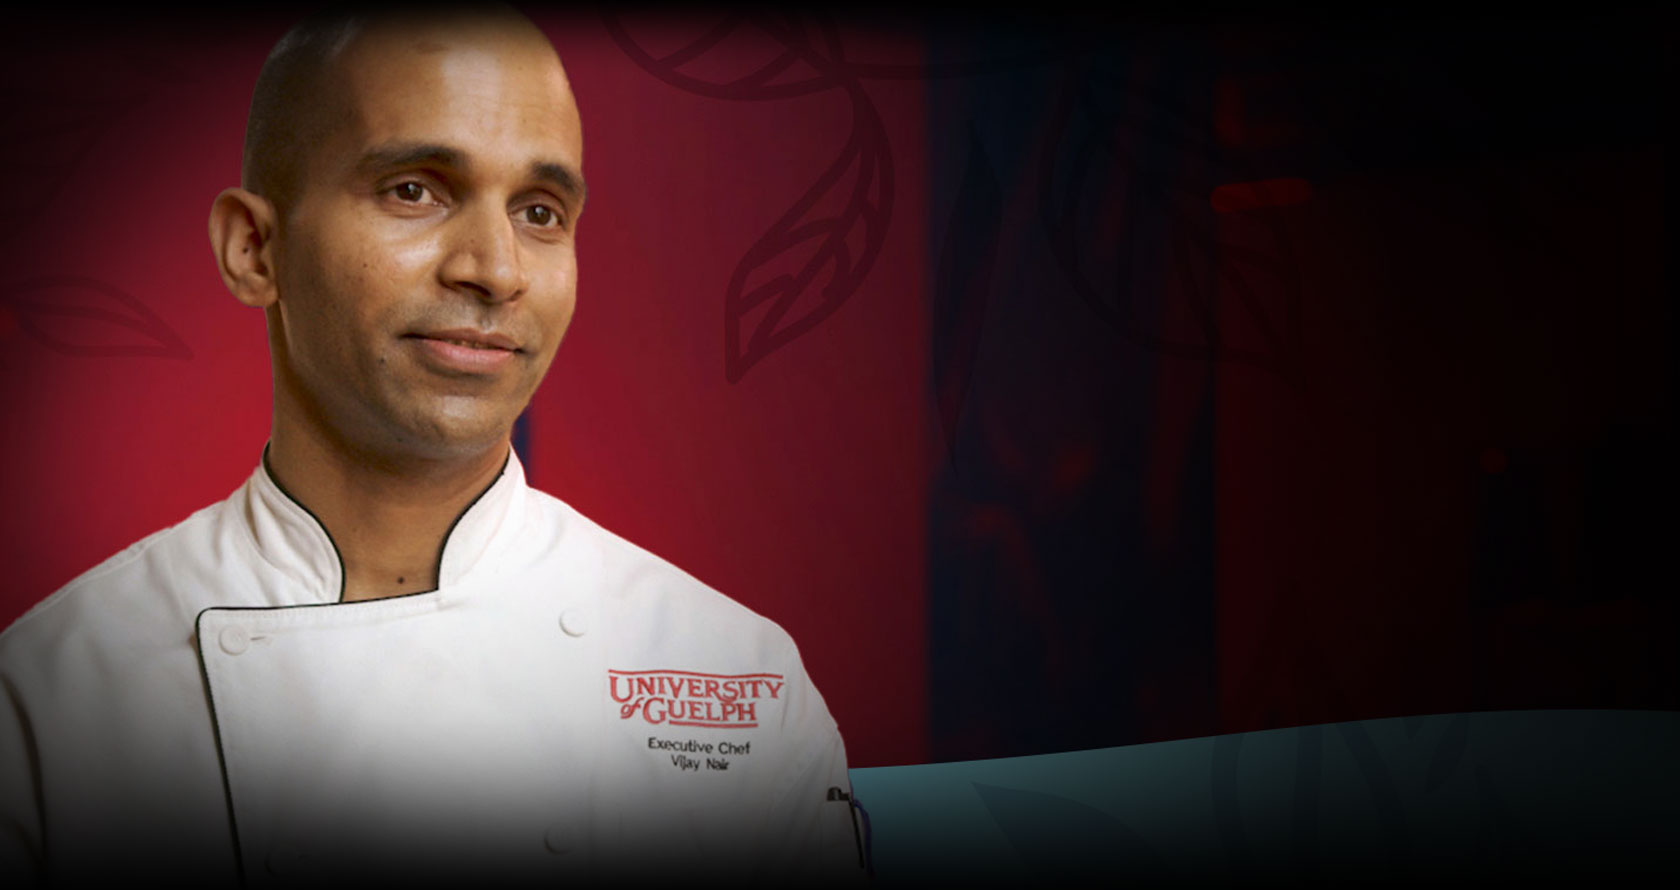 Executive Chef Vijay Nair